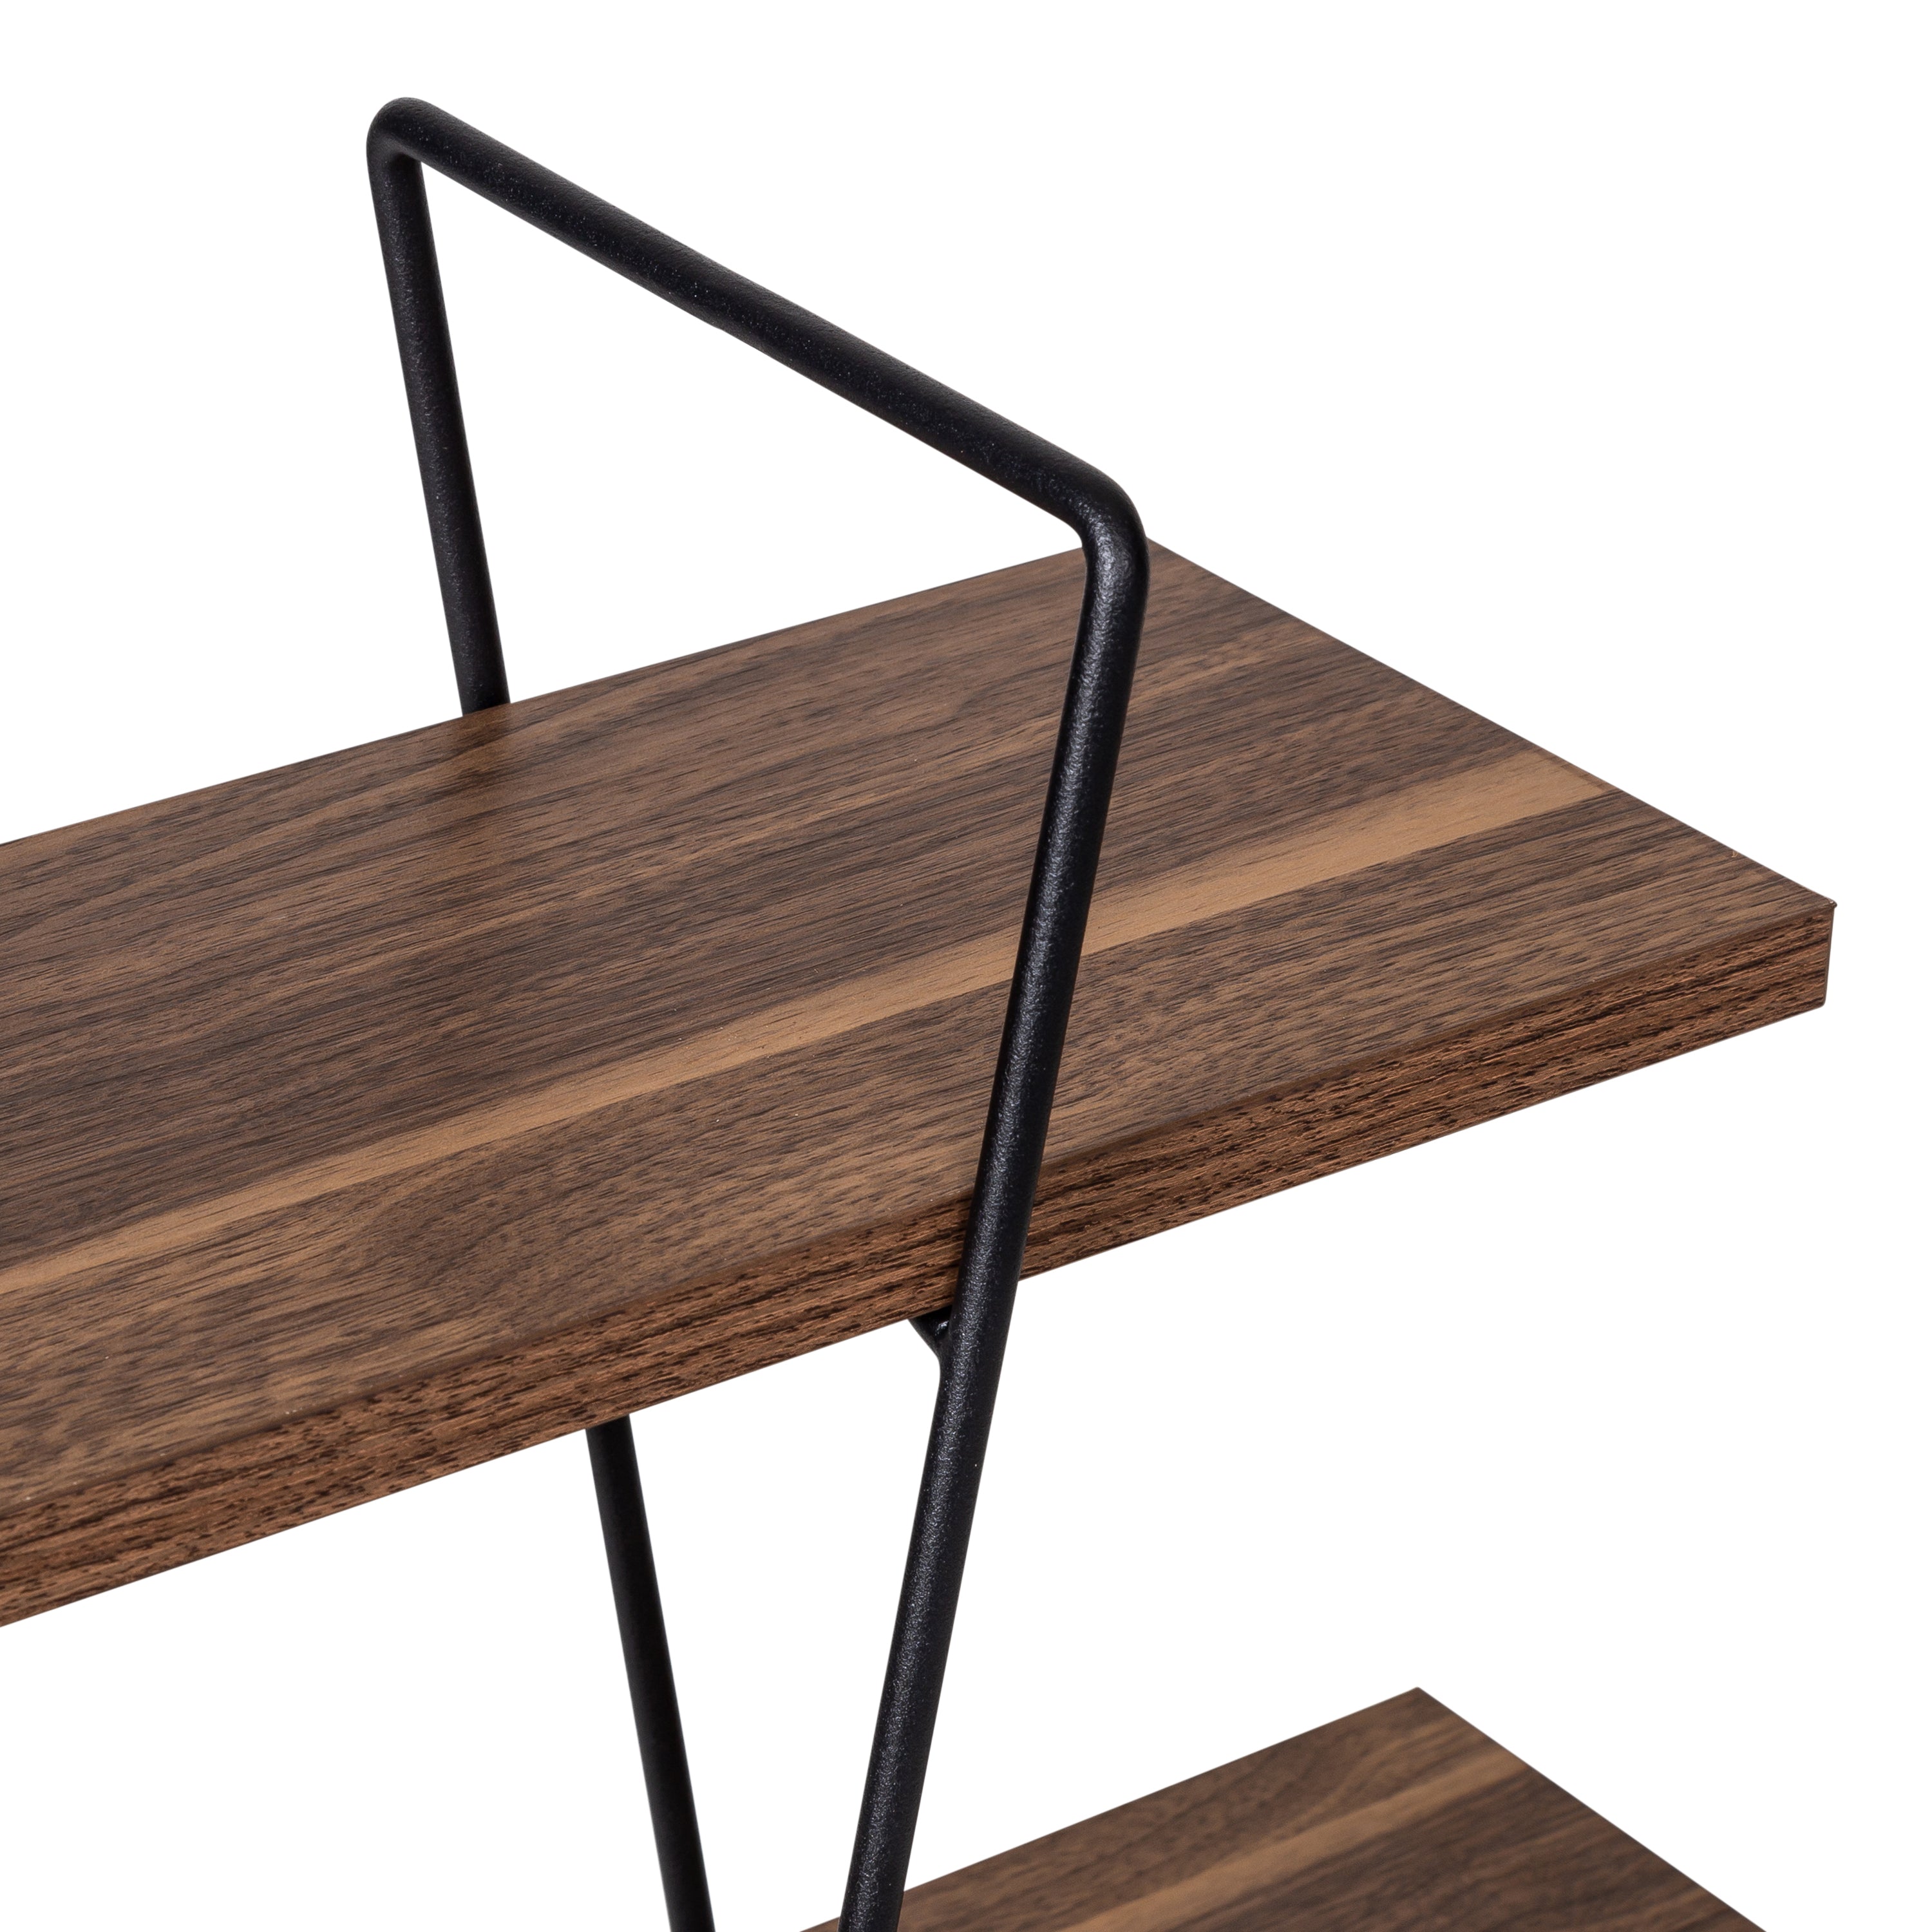 StoreSmith 3-Tier Wood/Metal Rack - 20220206